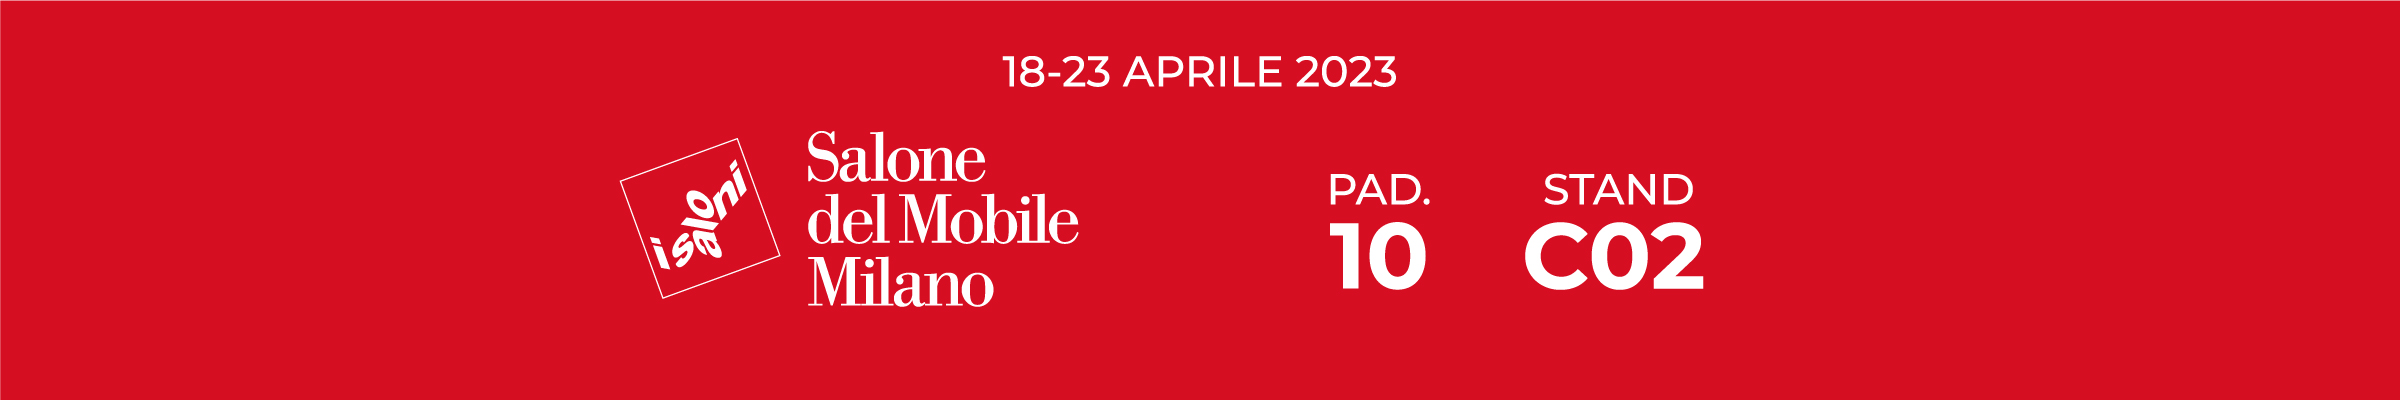 Barausse, sarà presente al Salone del Mobile di Milano, al padiglione 10, stand C02. Dal 18 al 23 Aprile 2023.